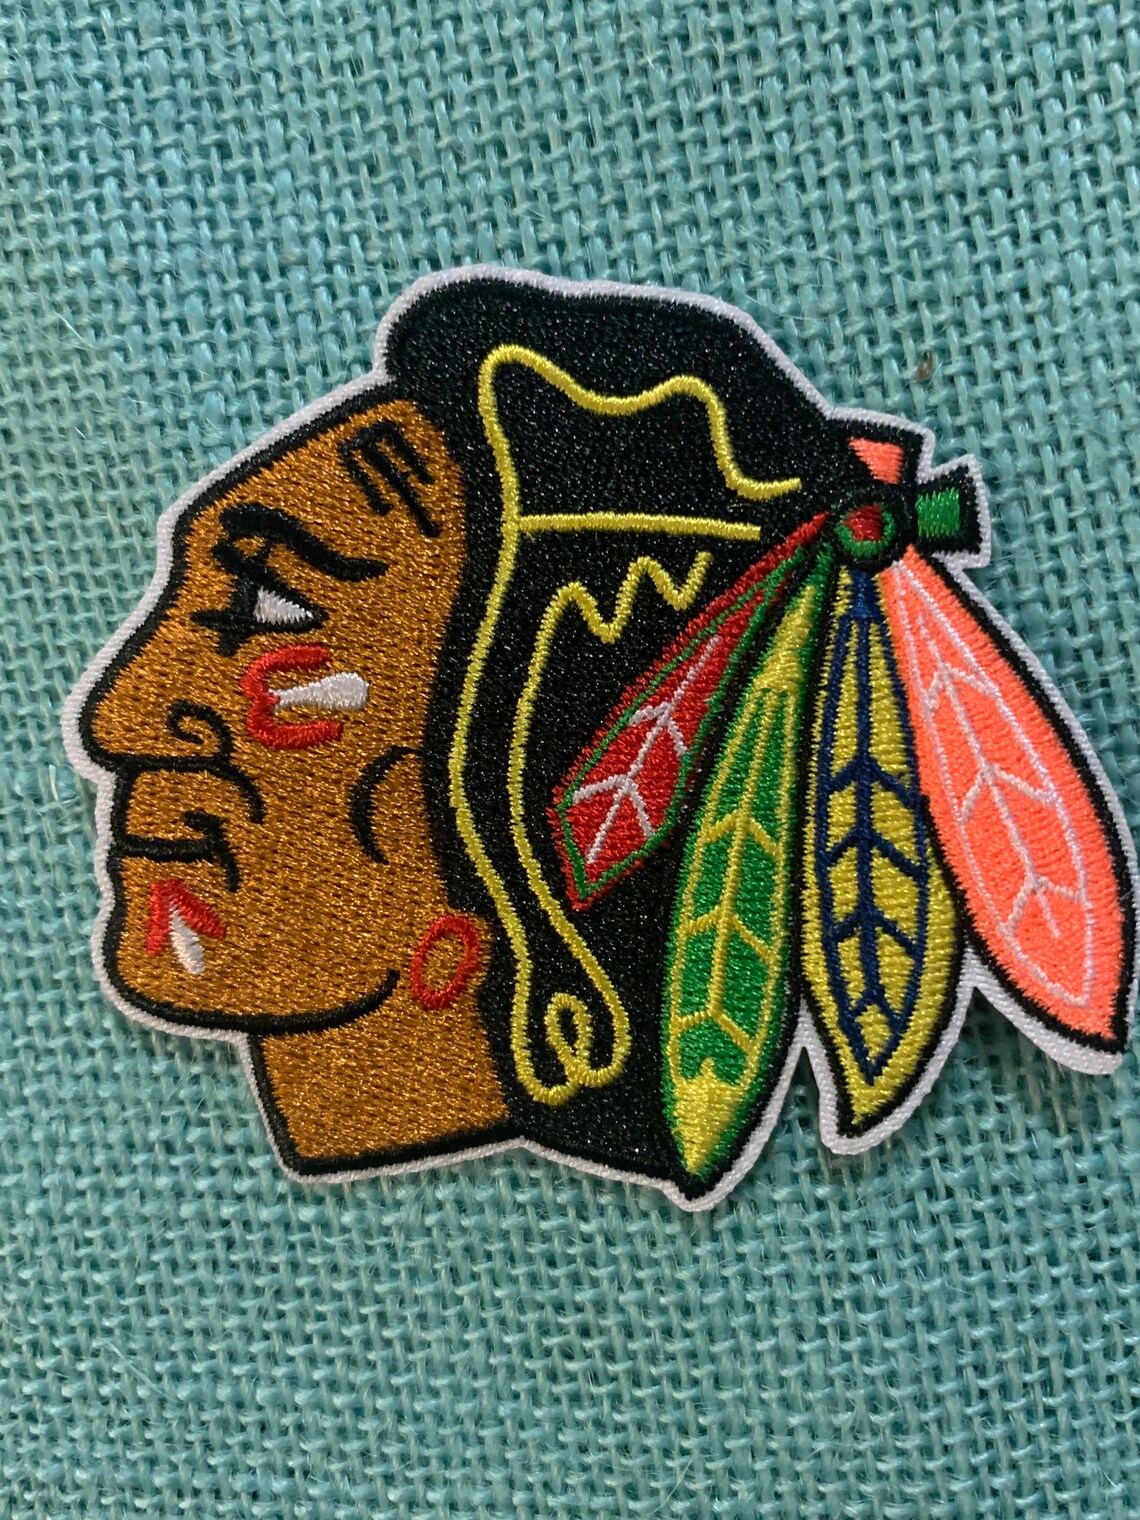 Chicago Blackhawks Hockey Patch NHL | Etsy